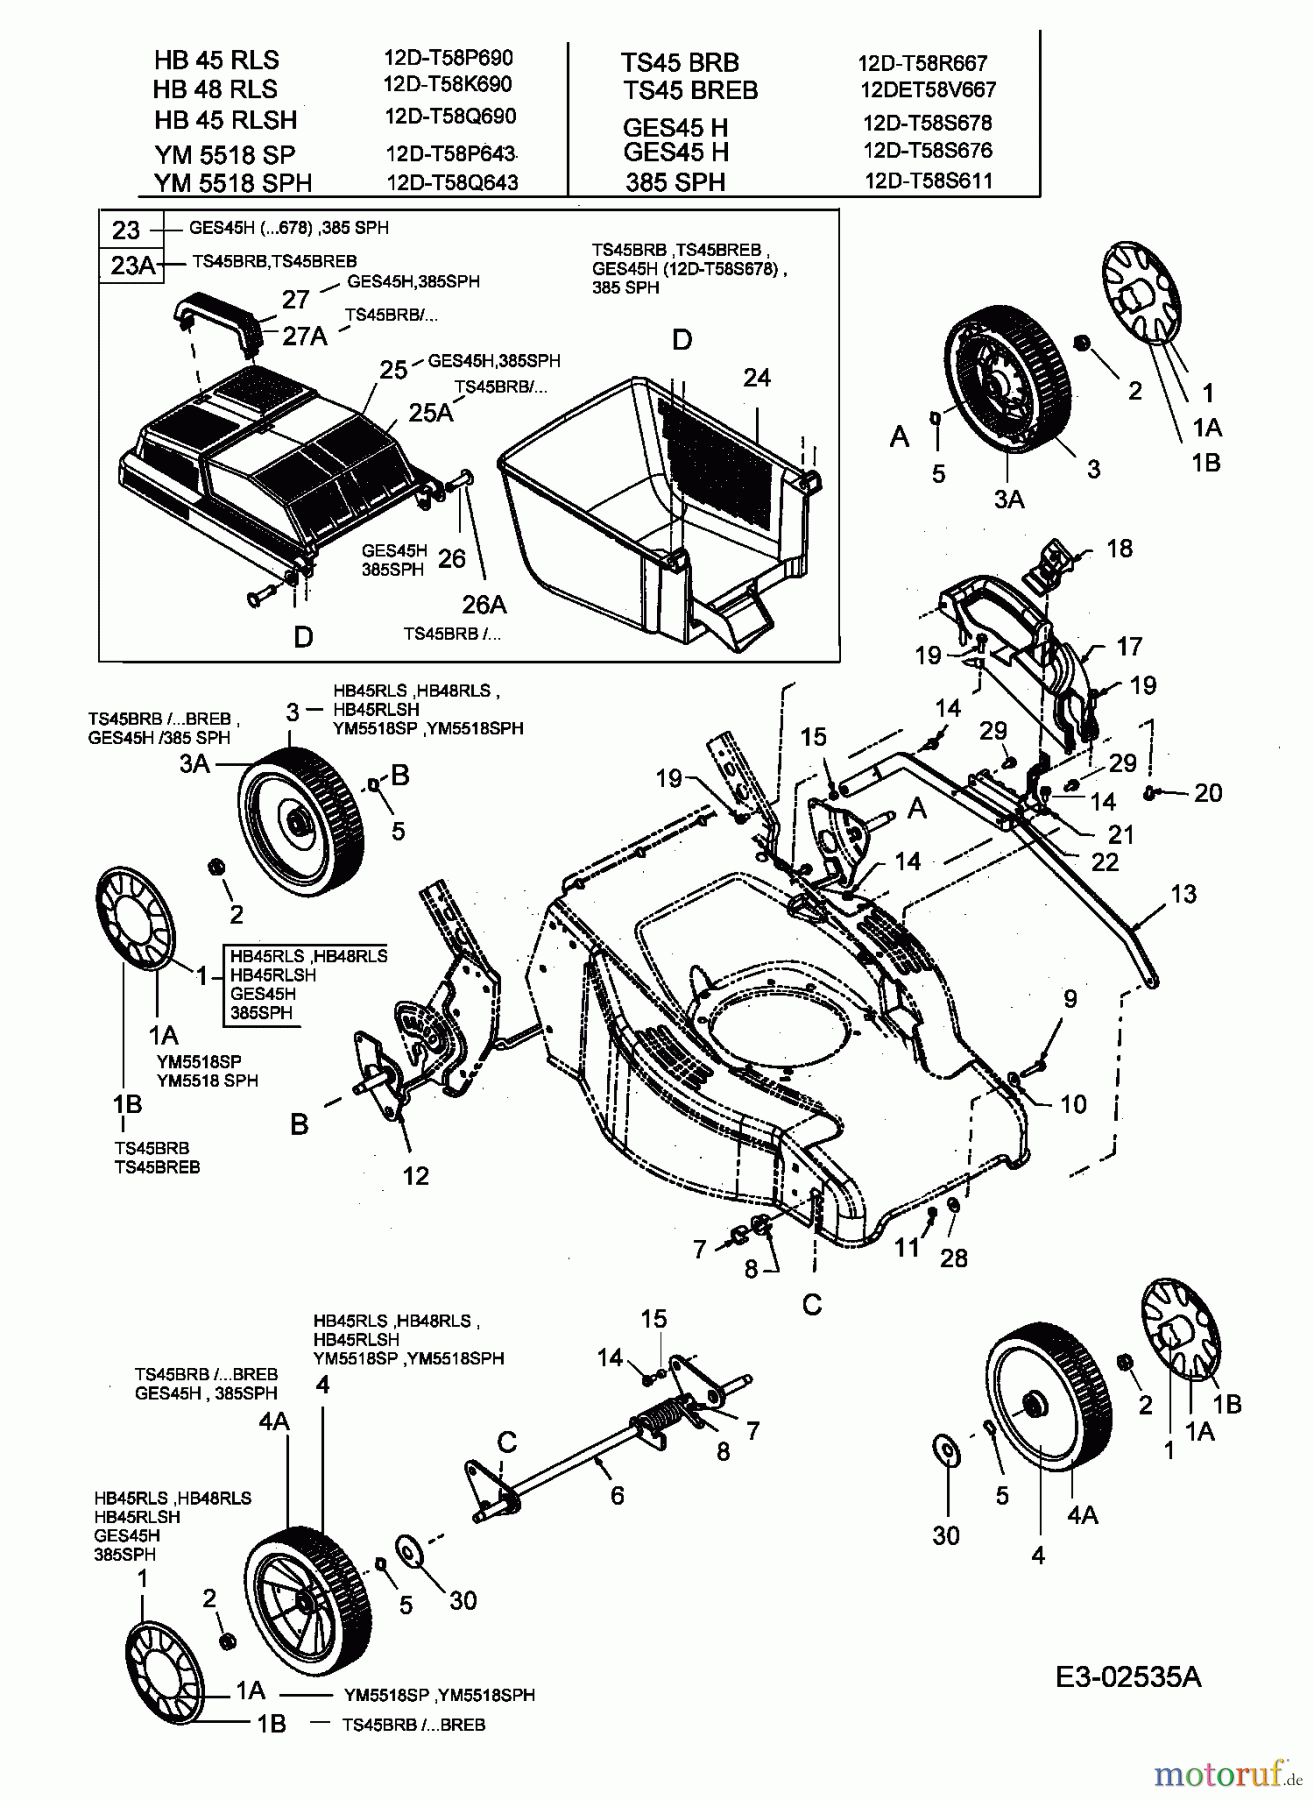  MTD Motormäher mit Antrieb GES 45 H 12D-T58S676  (2005) Grasfangkorb, Räder, Schnitthöhenverstellung